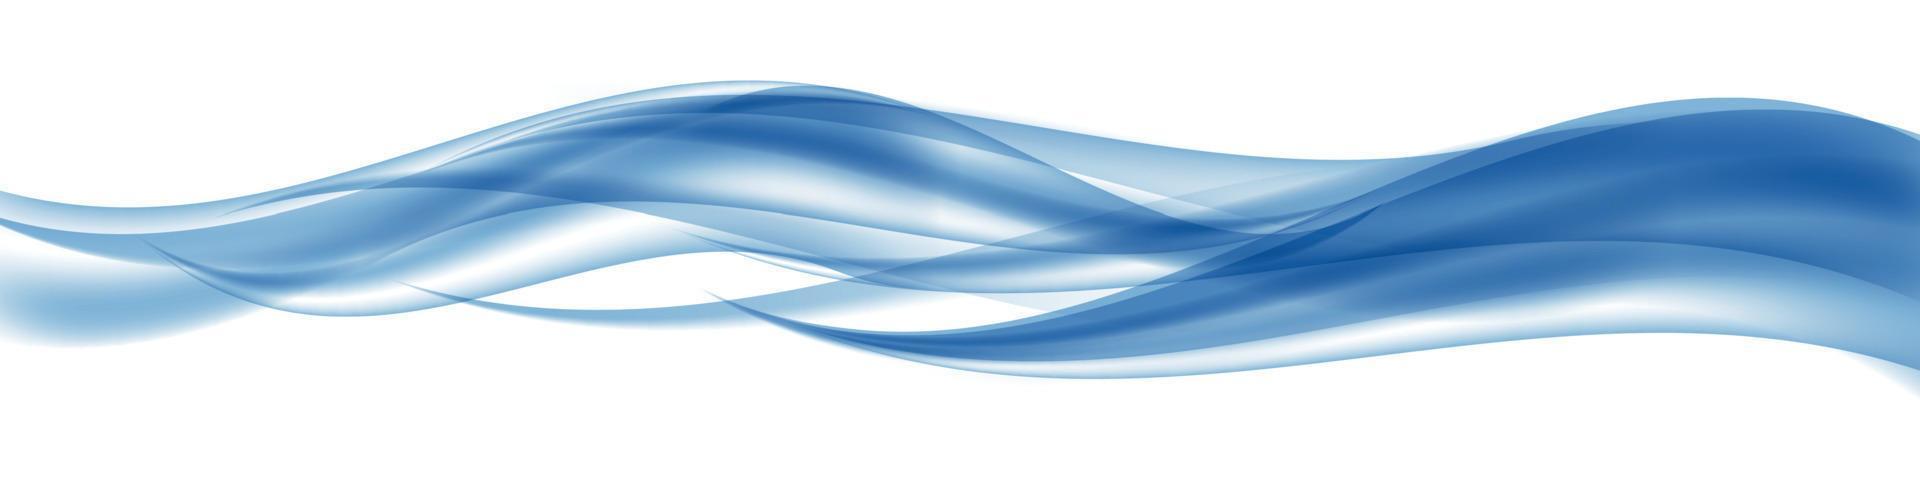 abstrakt blå våguppsättning på transparent bakgrund. vektor illustration